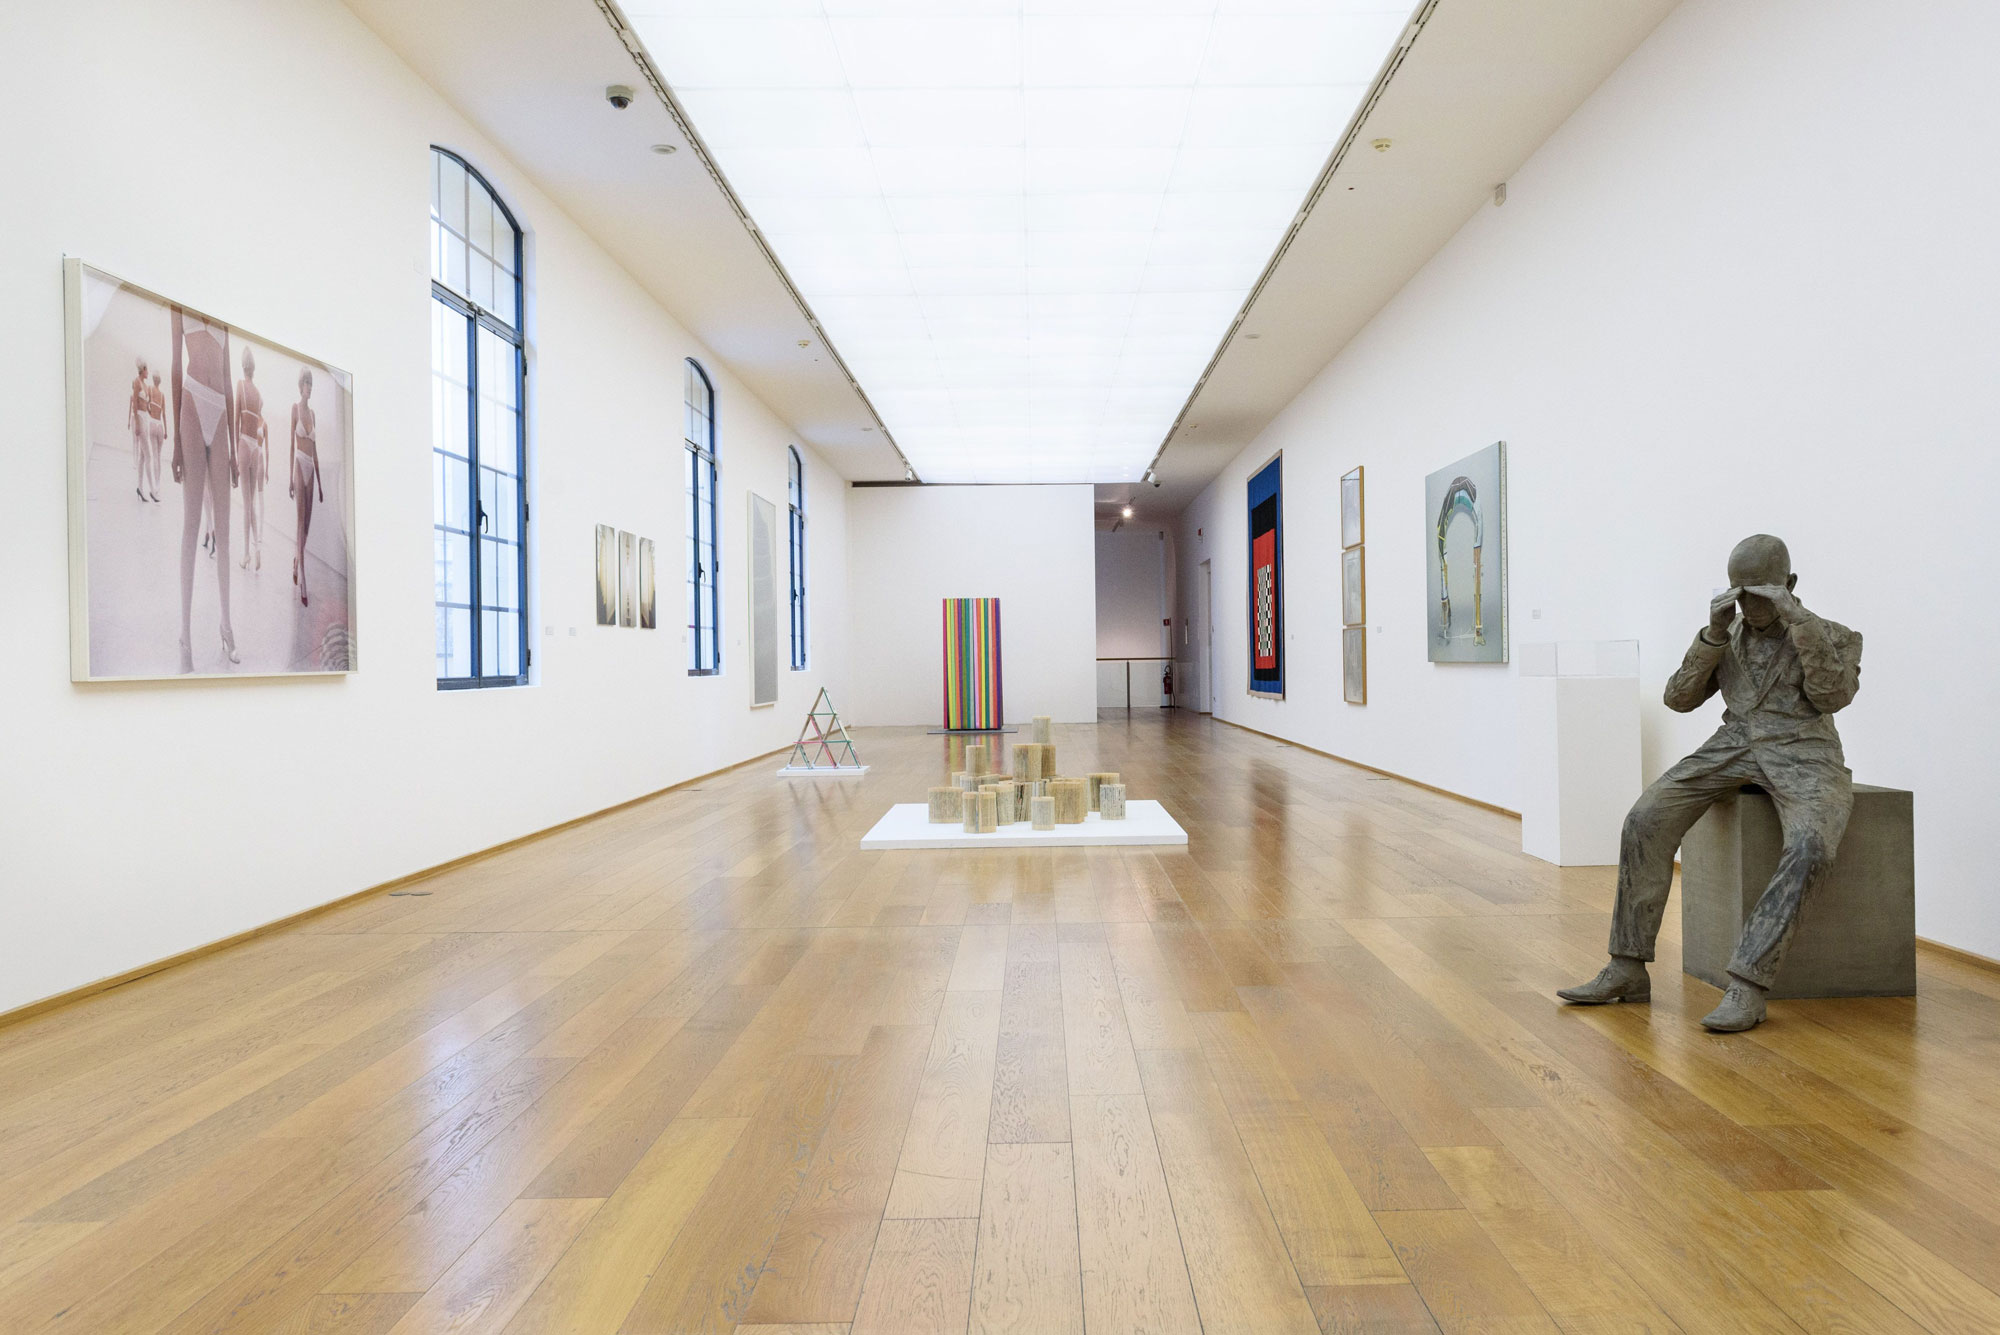 Dal Ministero oltre 3 milioni di euro per acquisizioni di opere d'arte contemporanea